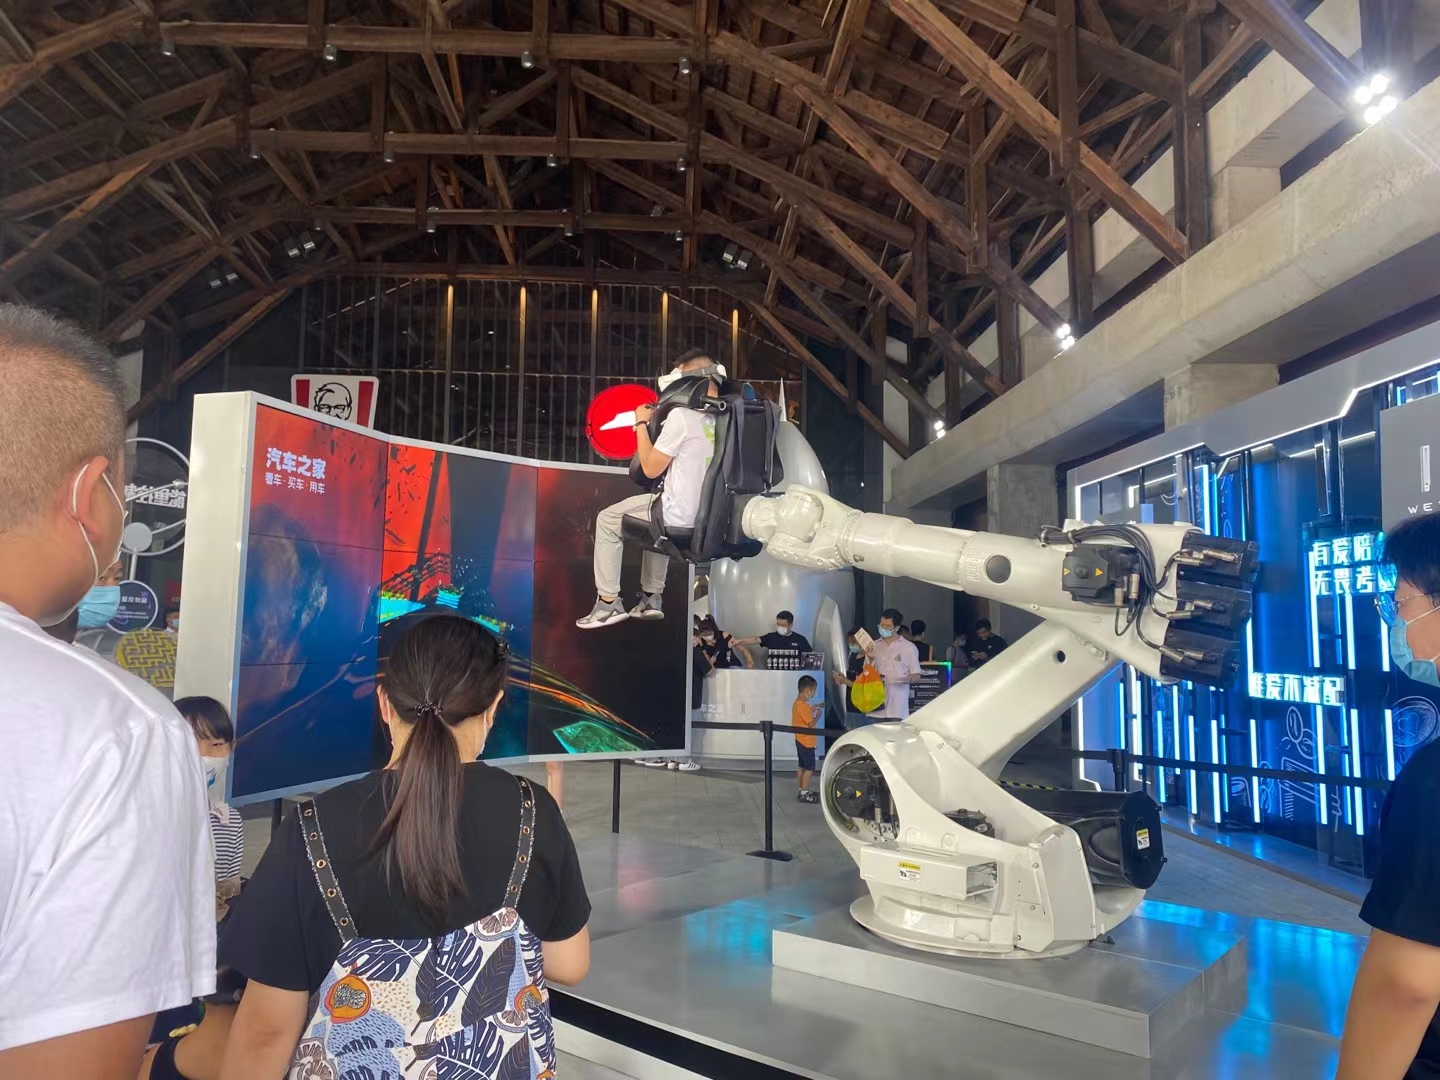 汽车之家·超级登陆日活动圆满结束。 巨型机械臂VR互动装置